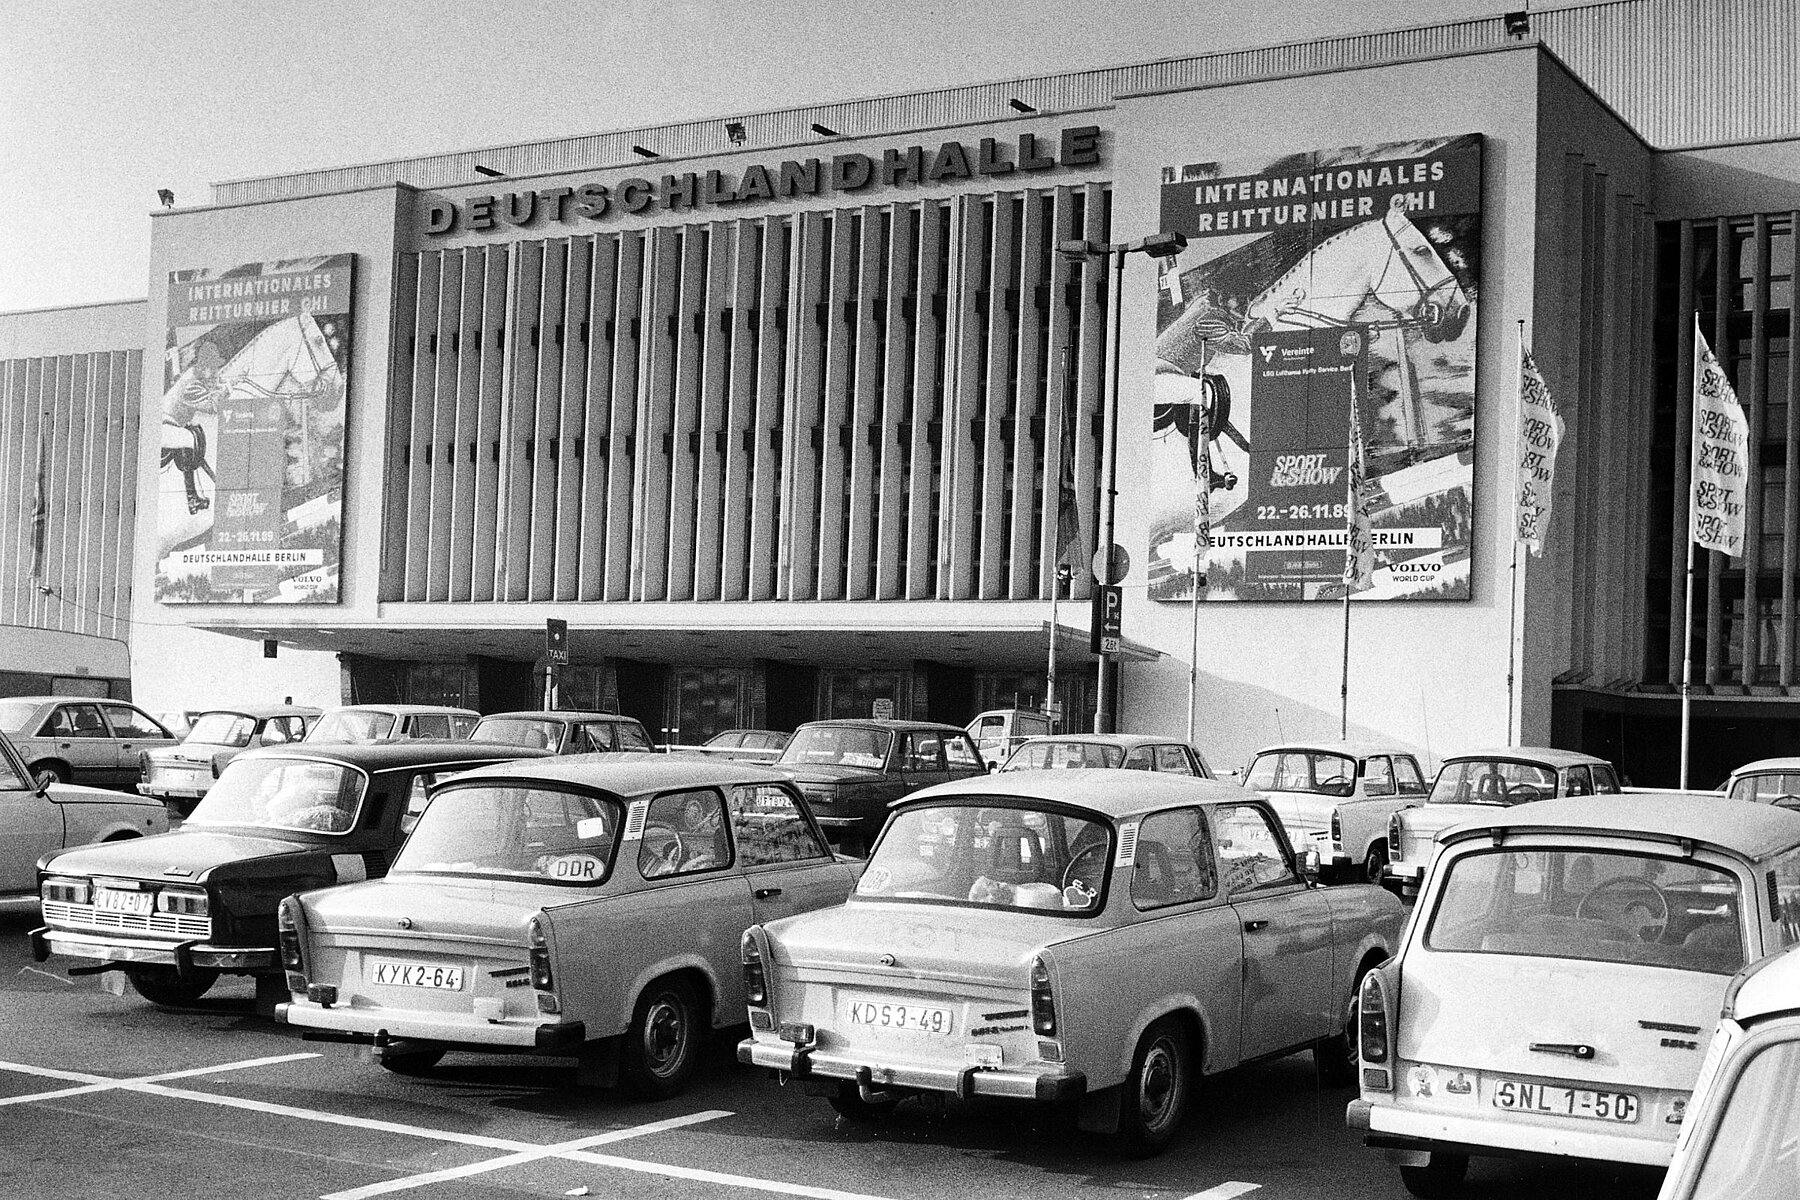 Eine Reihe von Trabants parkt vor einem Gebäude mit dem zentralen Schriftzug Deutschlandhalle. Links und rechts des Gebäudes sind Plakate zu sehen, die für ein internationales Reitturnier im November 1989 werben.